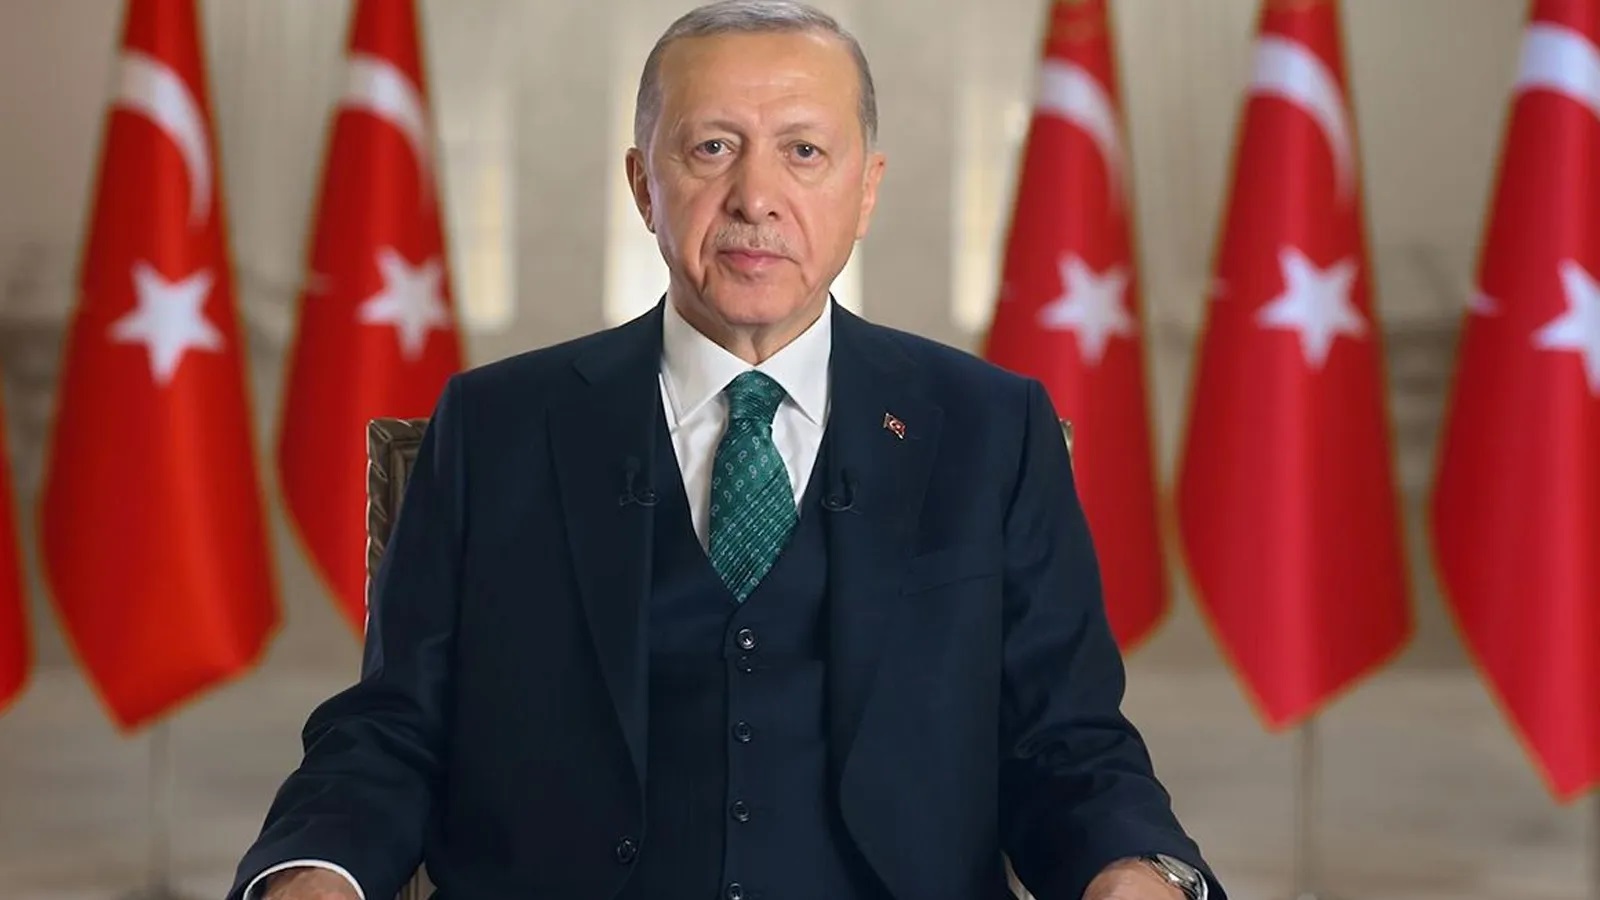 Cumhurbaşkanı Erdoğan'dan Fahiş Artış Yapan Ev Sahiplerine: "Fahiş Fiyat Artışlarının Cezasını Çekecekler!"